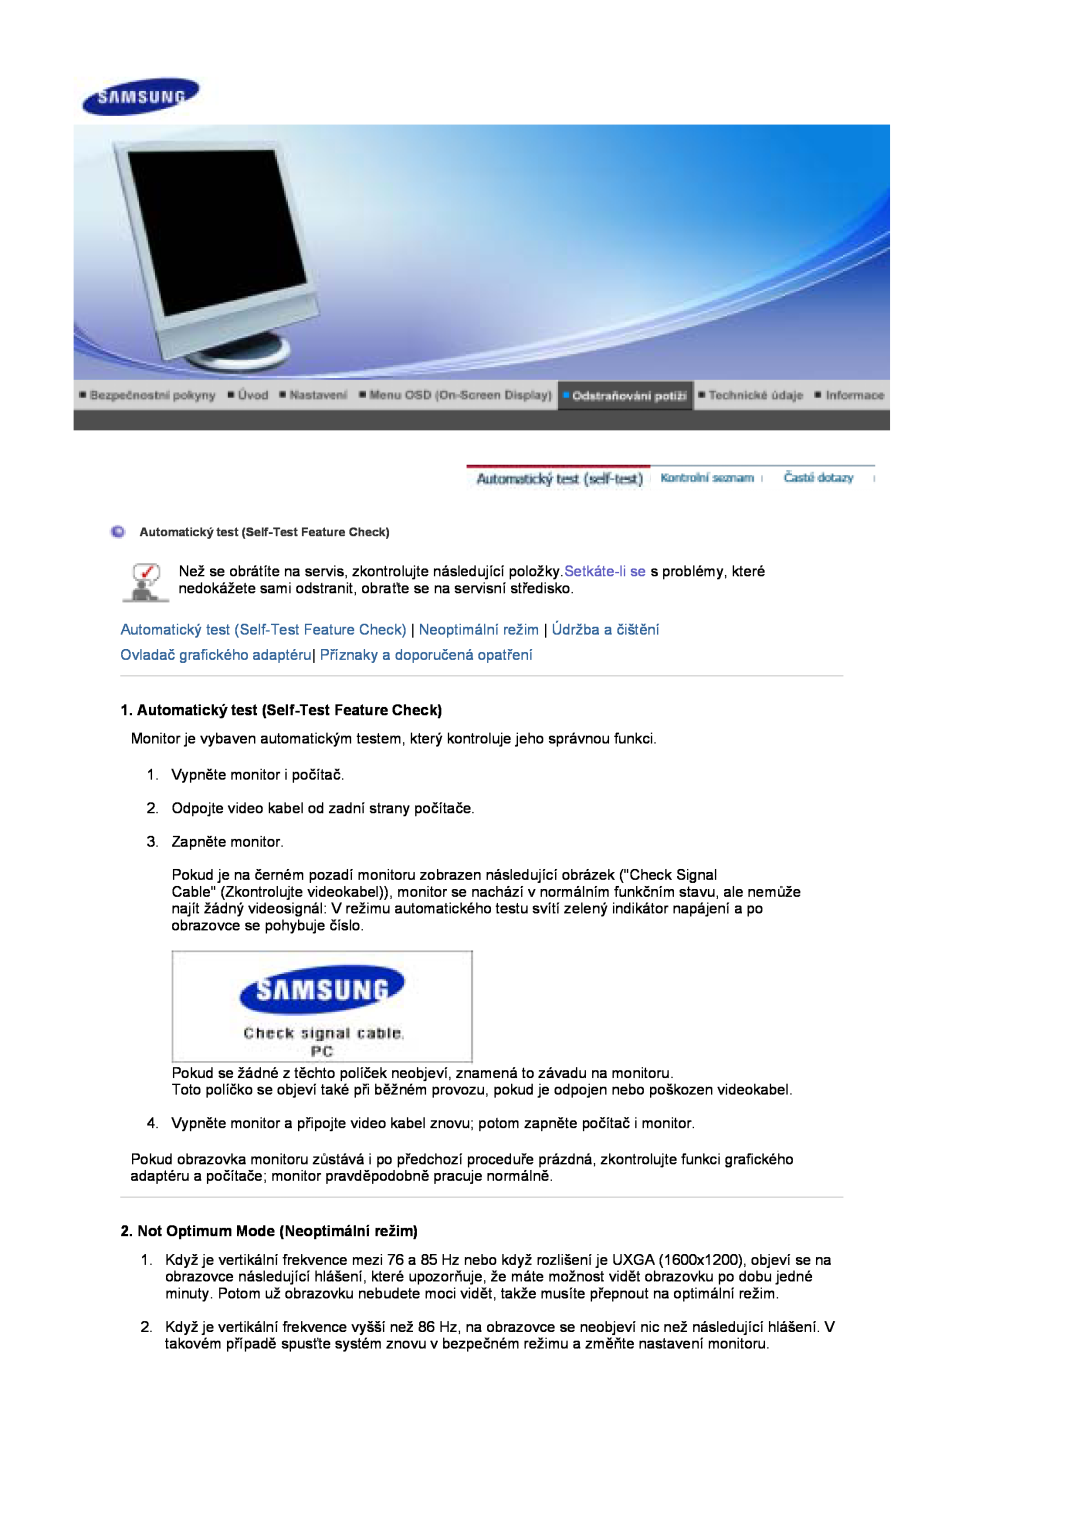 Samsung LS17DOASS/EDC Ovladač grafického adaptéru Příznaky a doporučená opatření, Automatický test Self-Test Feature Check 